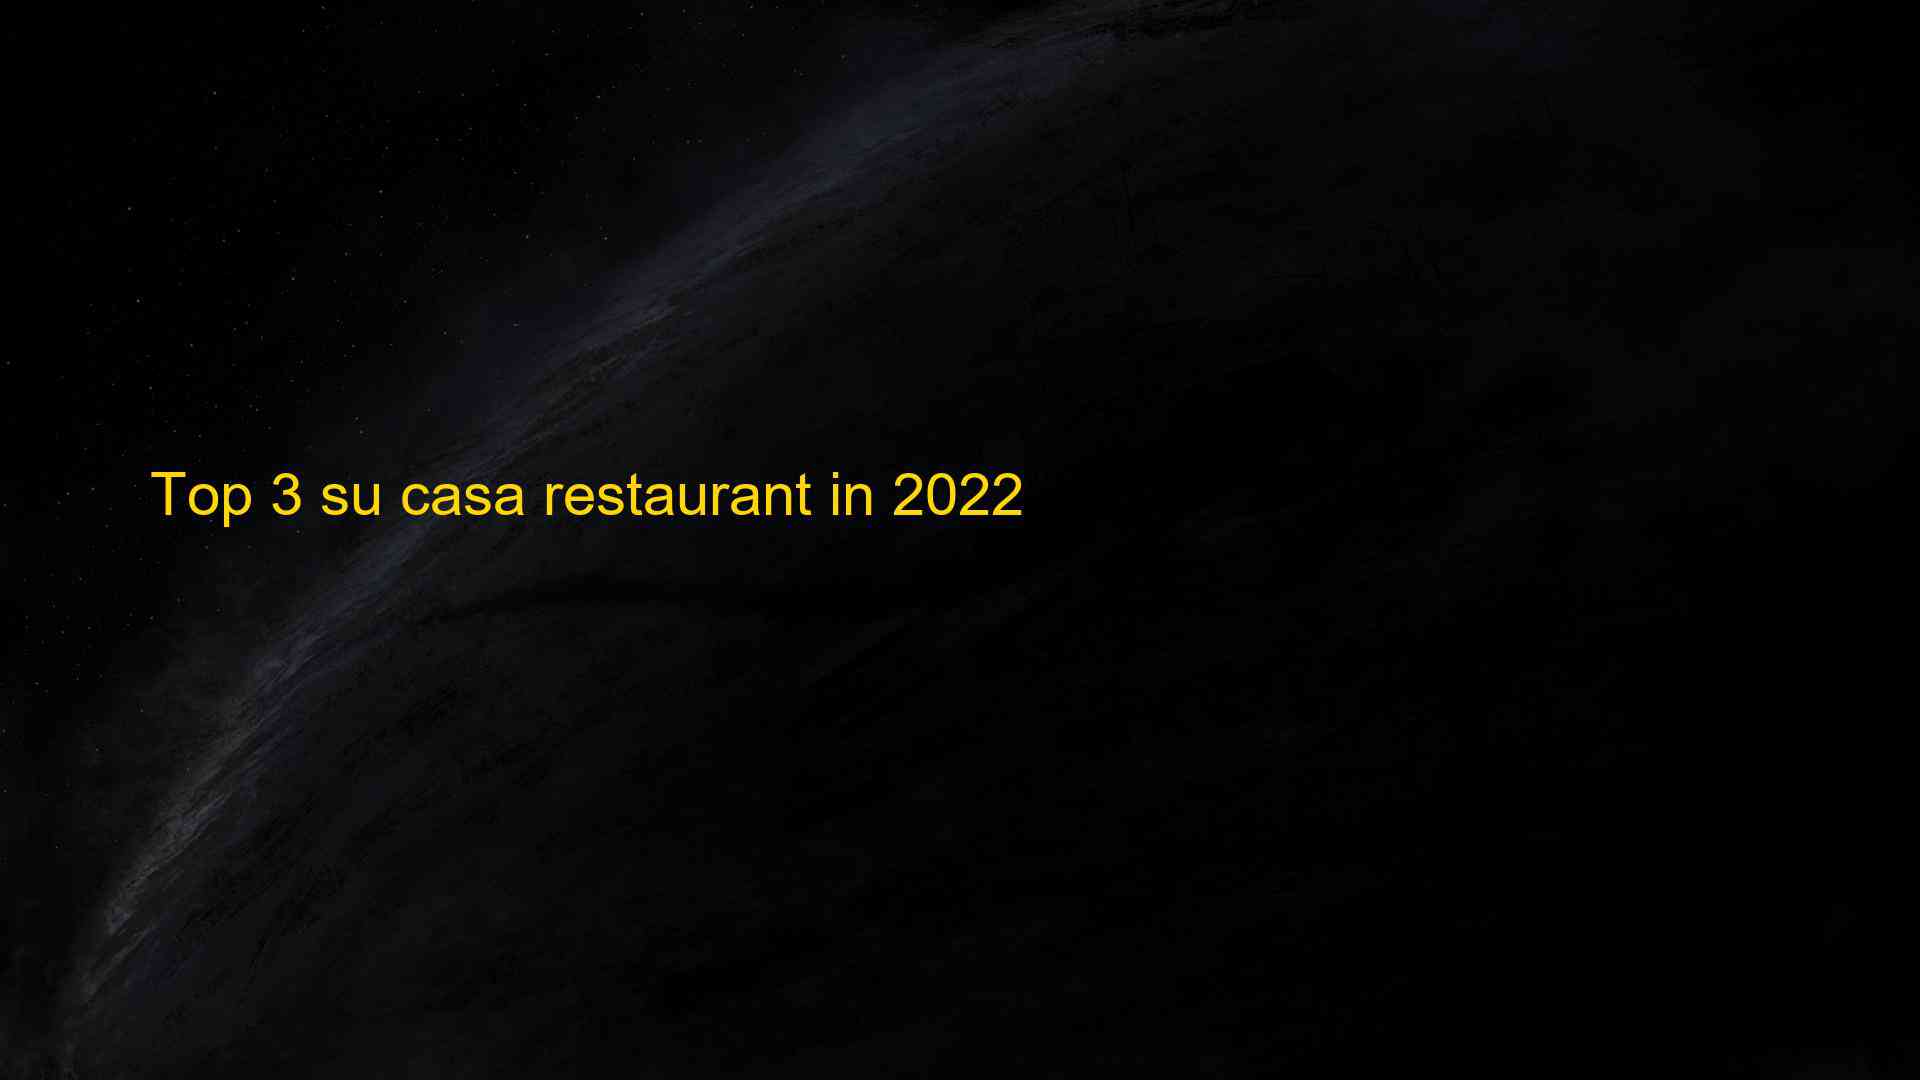 Top 3 su casa restaurant in 2022 1663393581